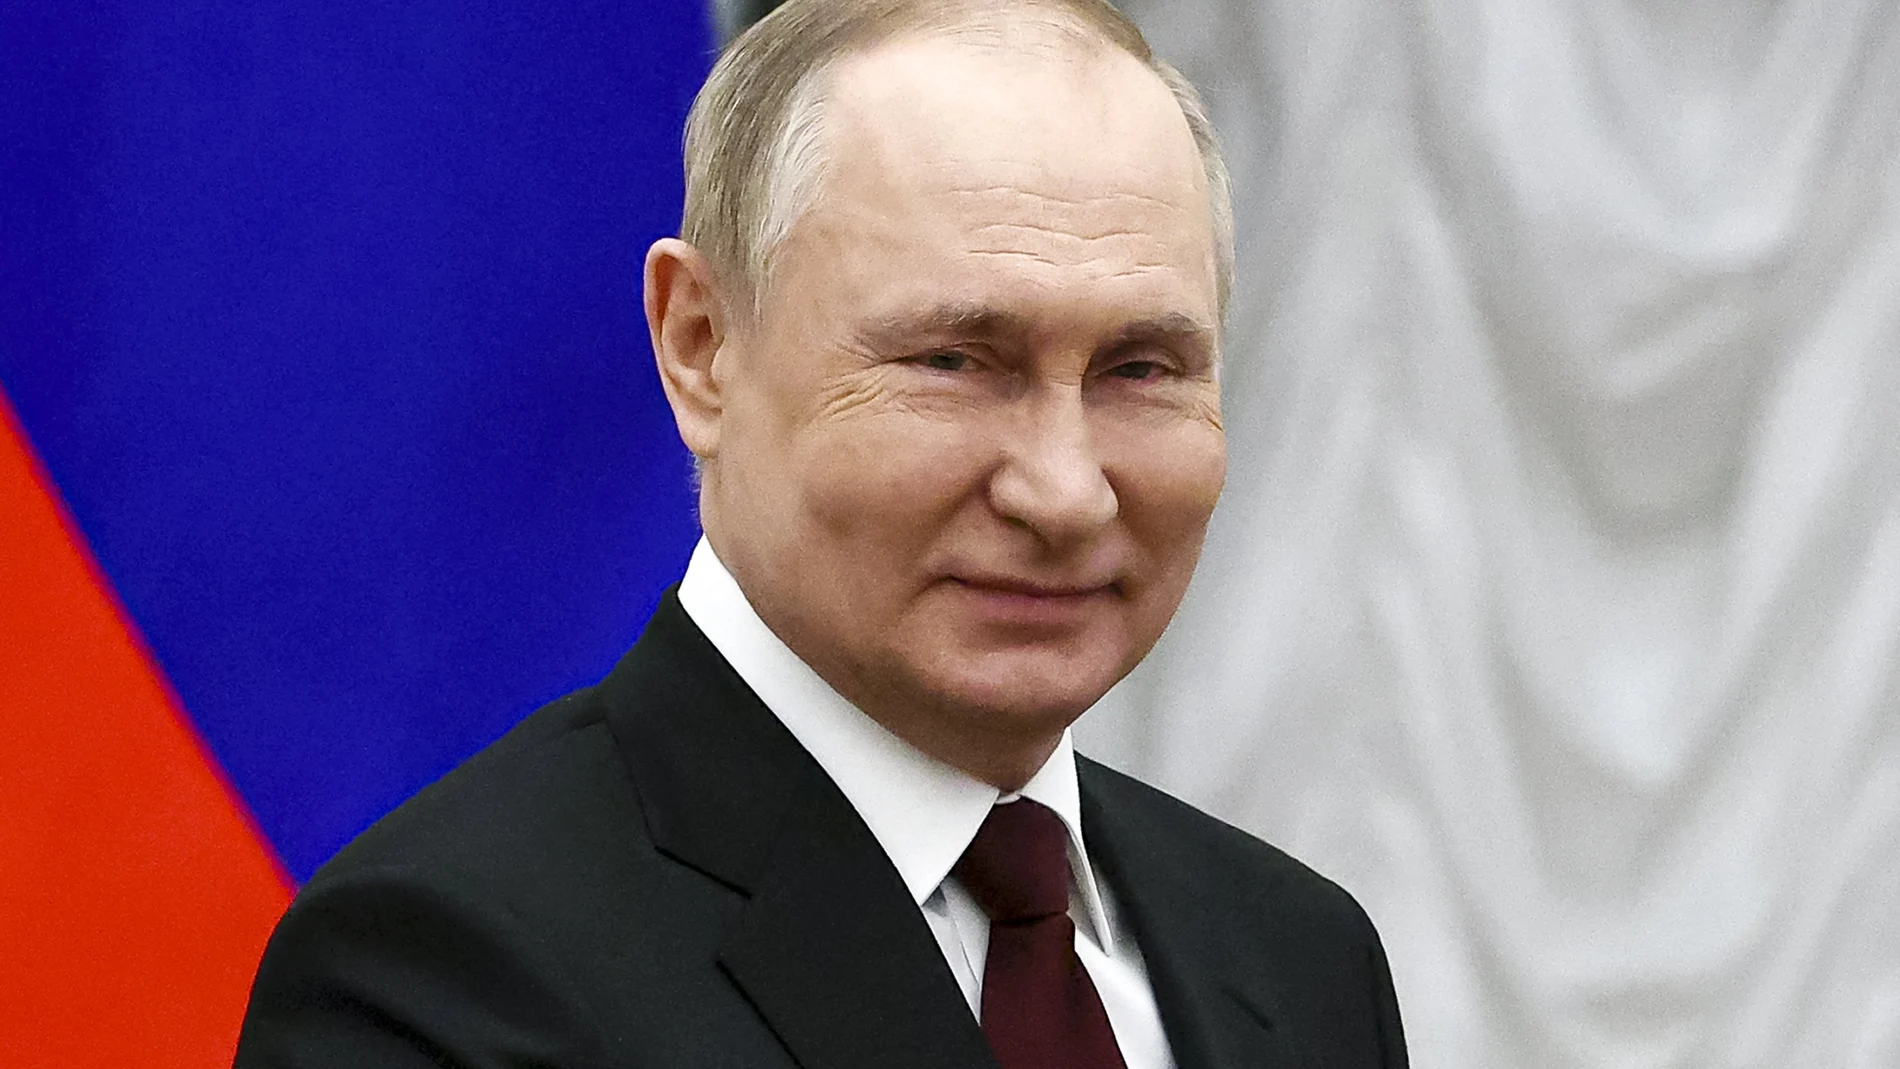 El presidente Putin en un acto el pasado 2 de febrero en el Kremlin